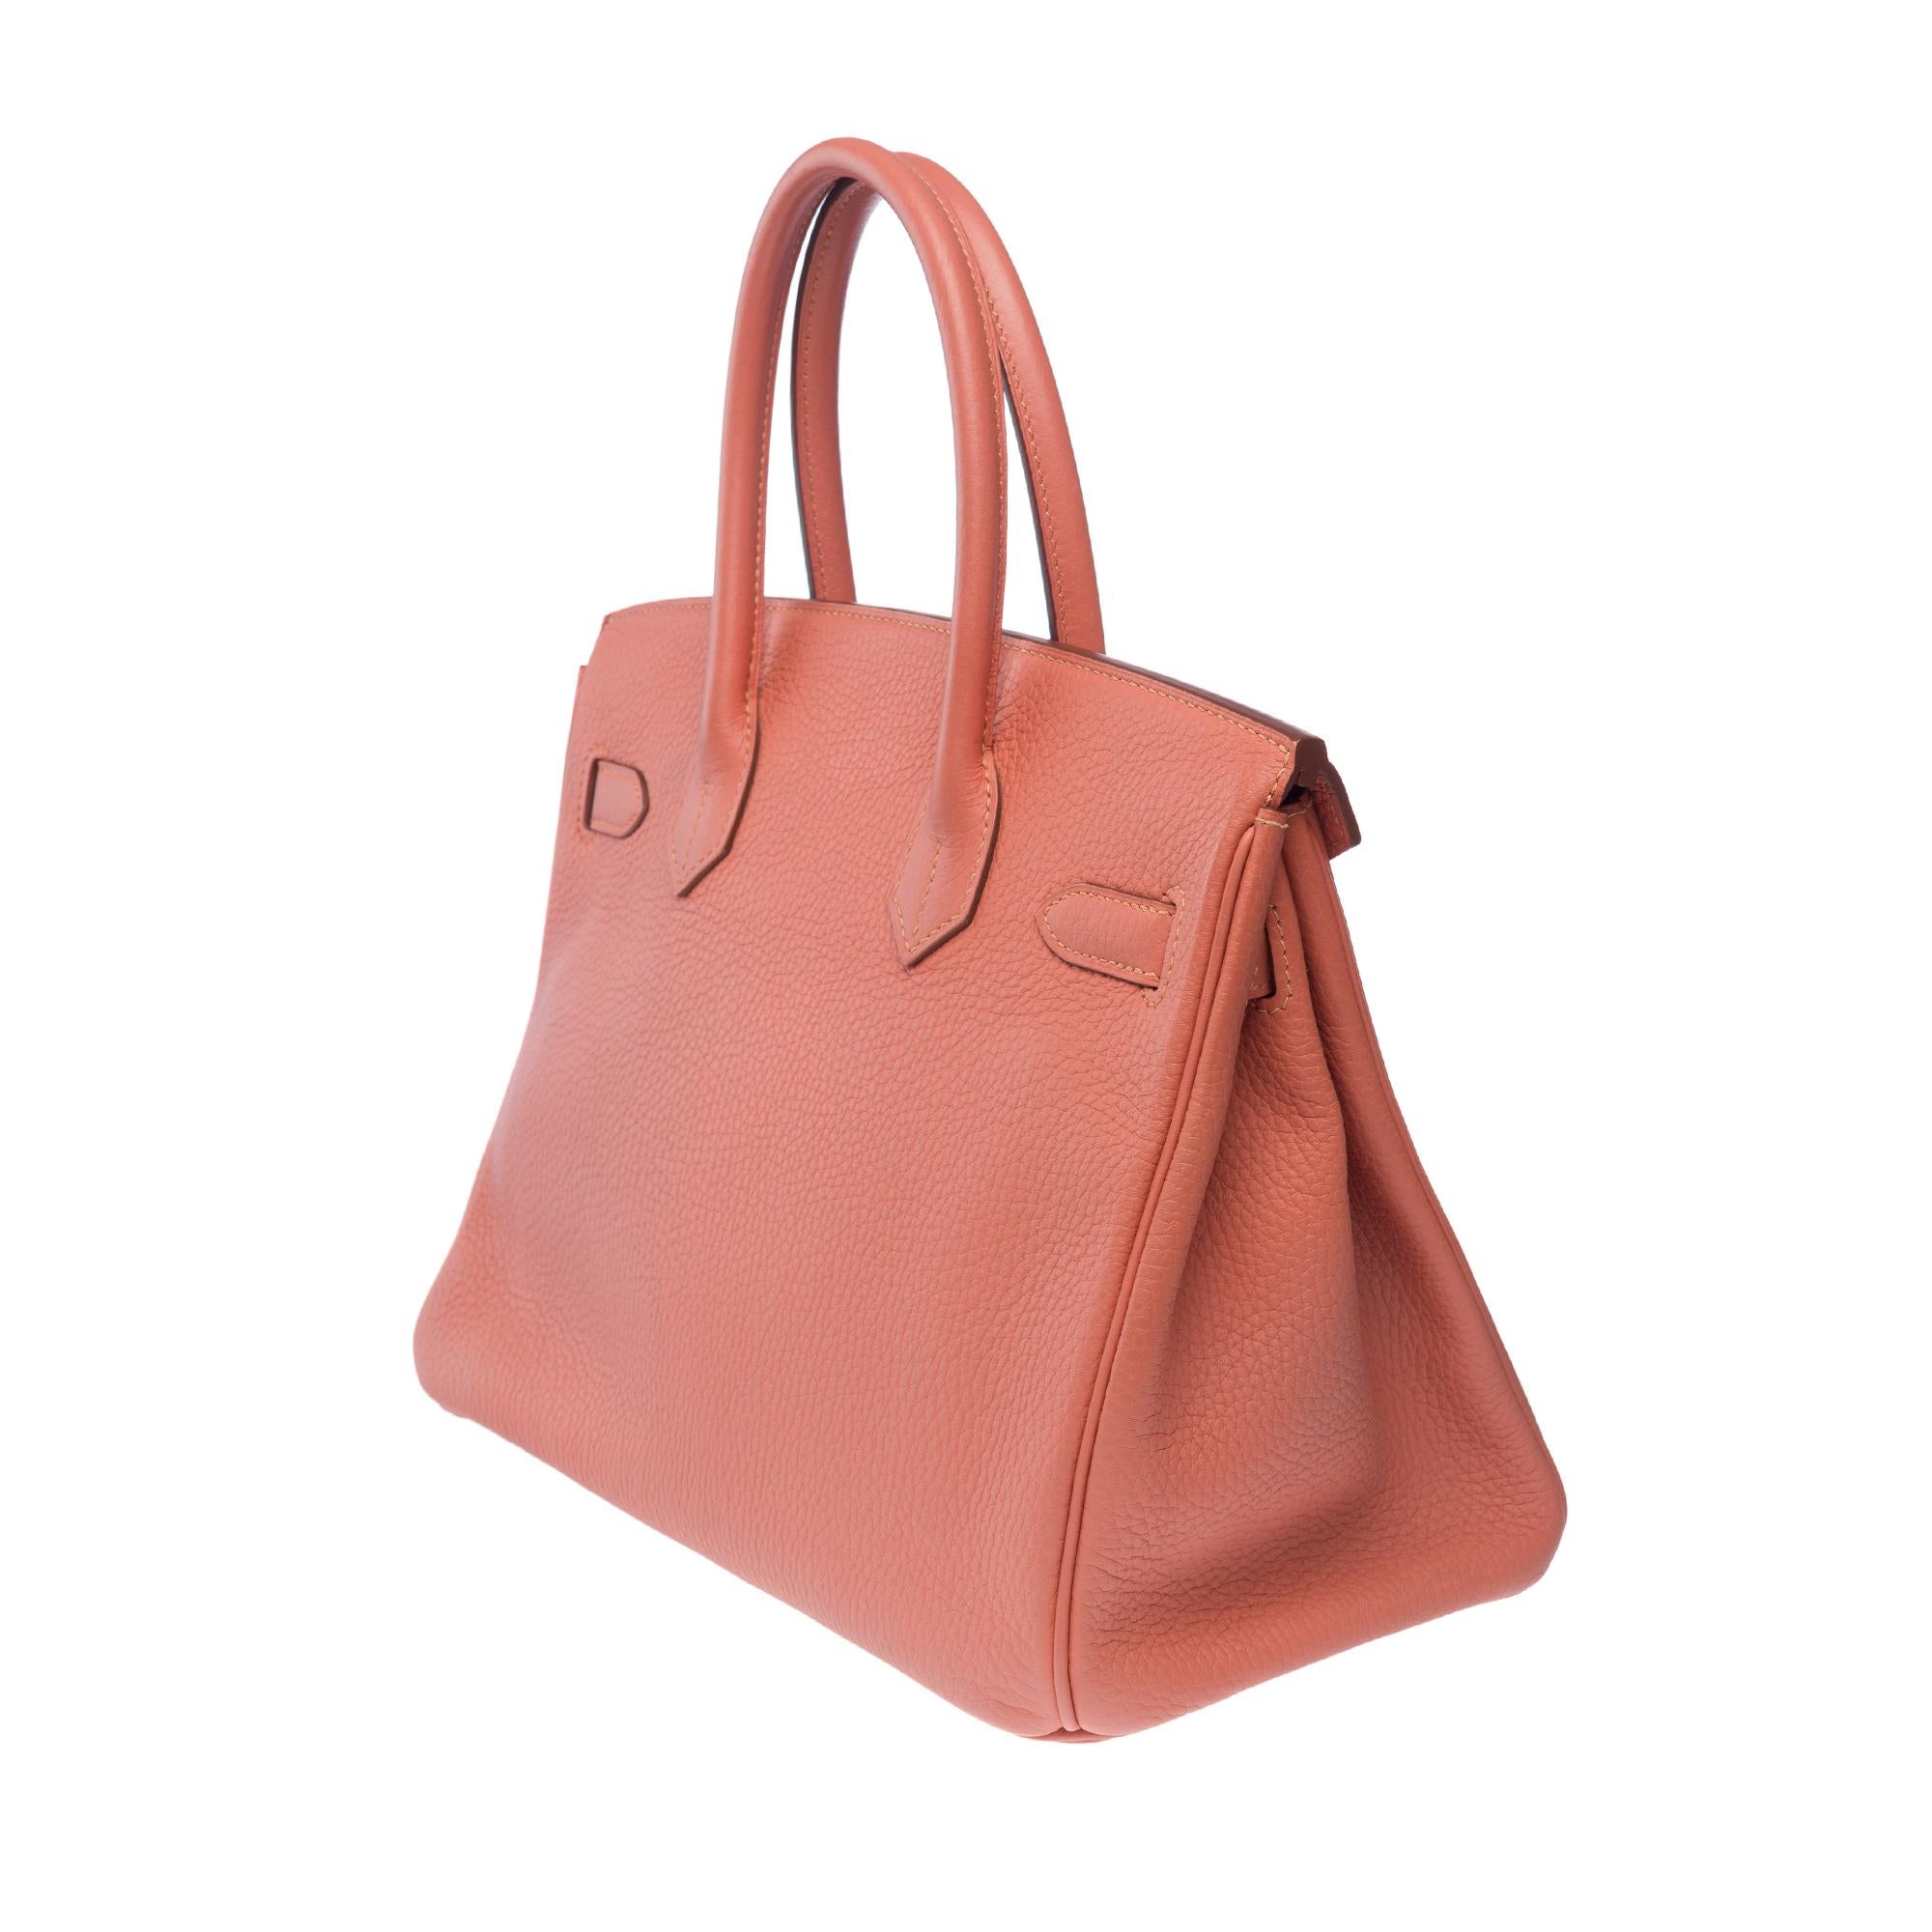 Stunning Hermes Birkin 30 handbag in Rose Tea Togo leather, SHW For Sale 1